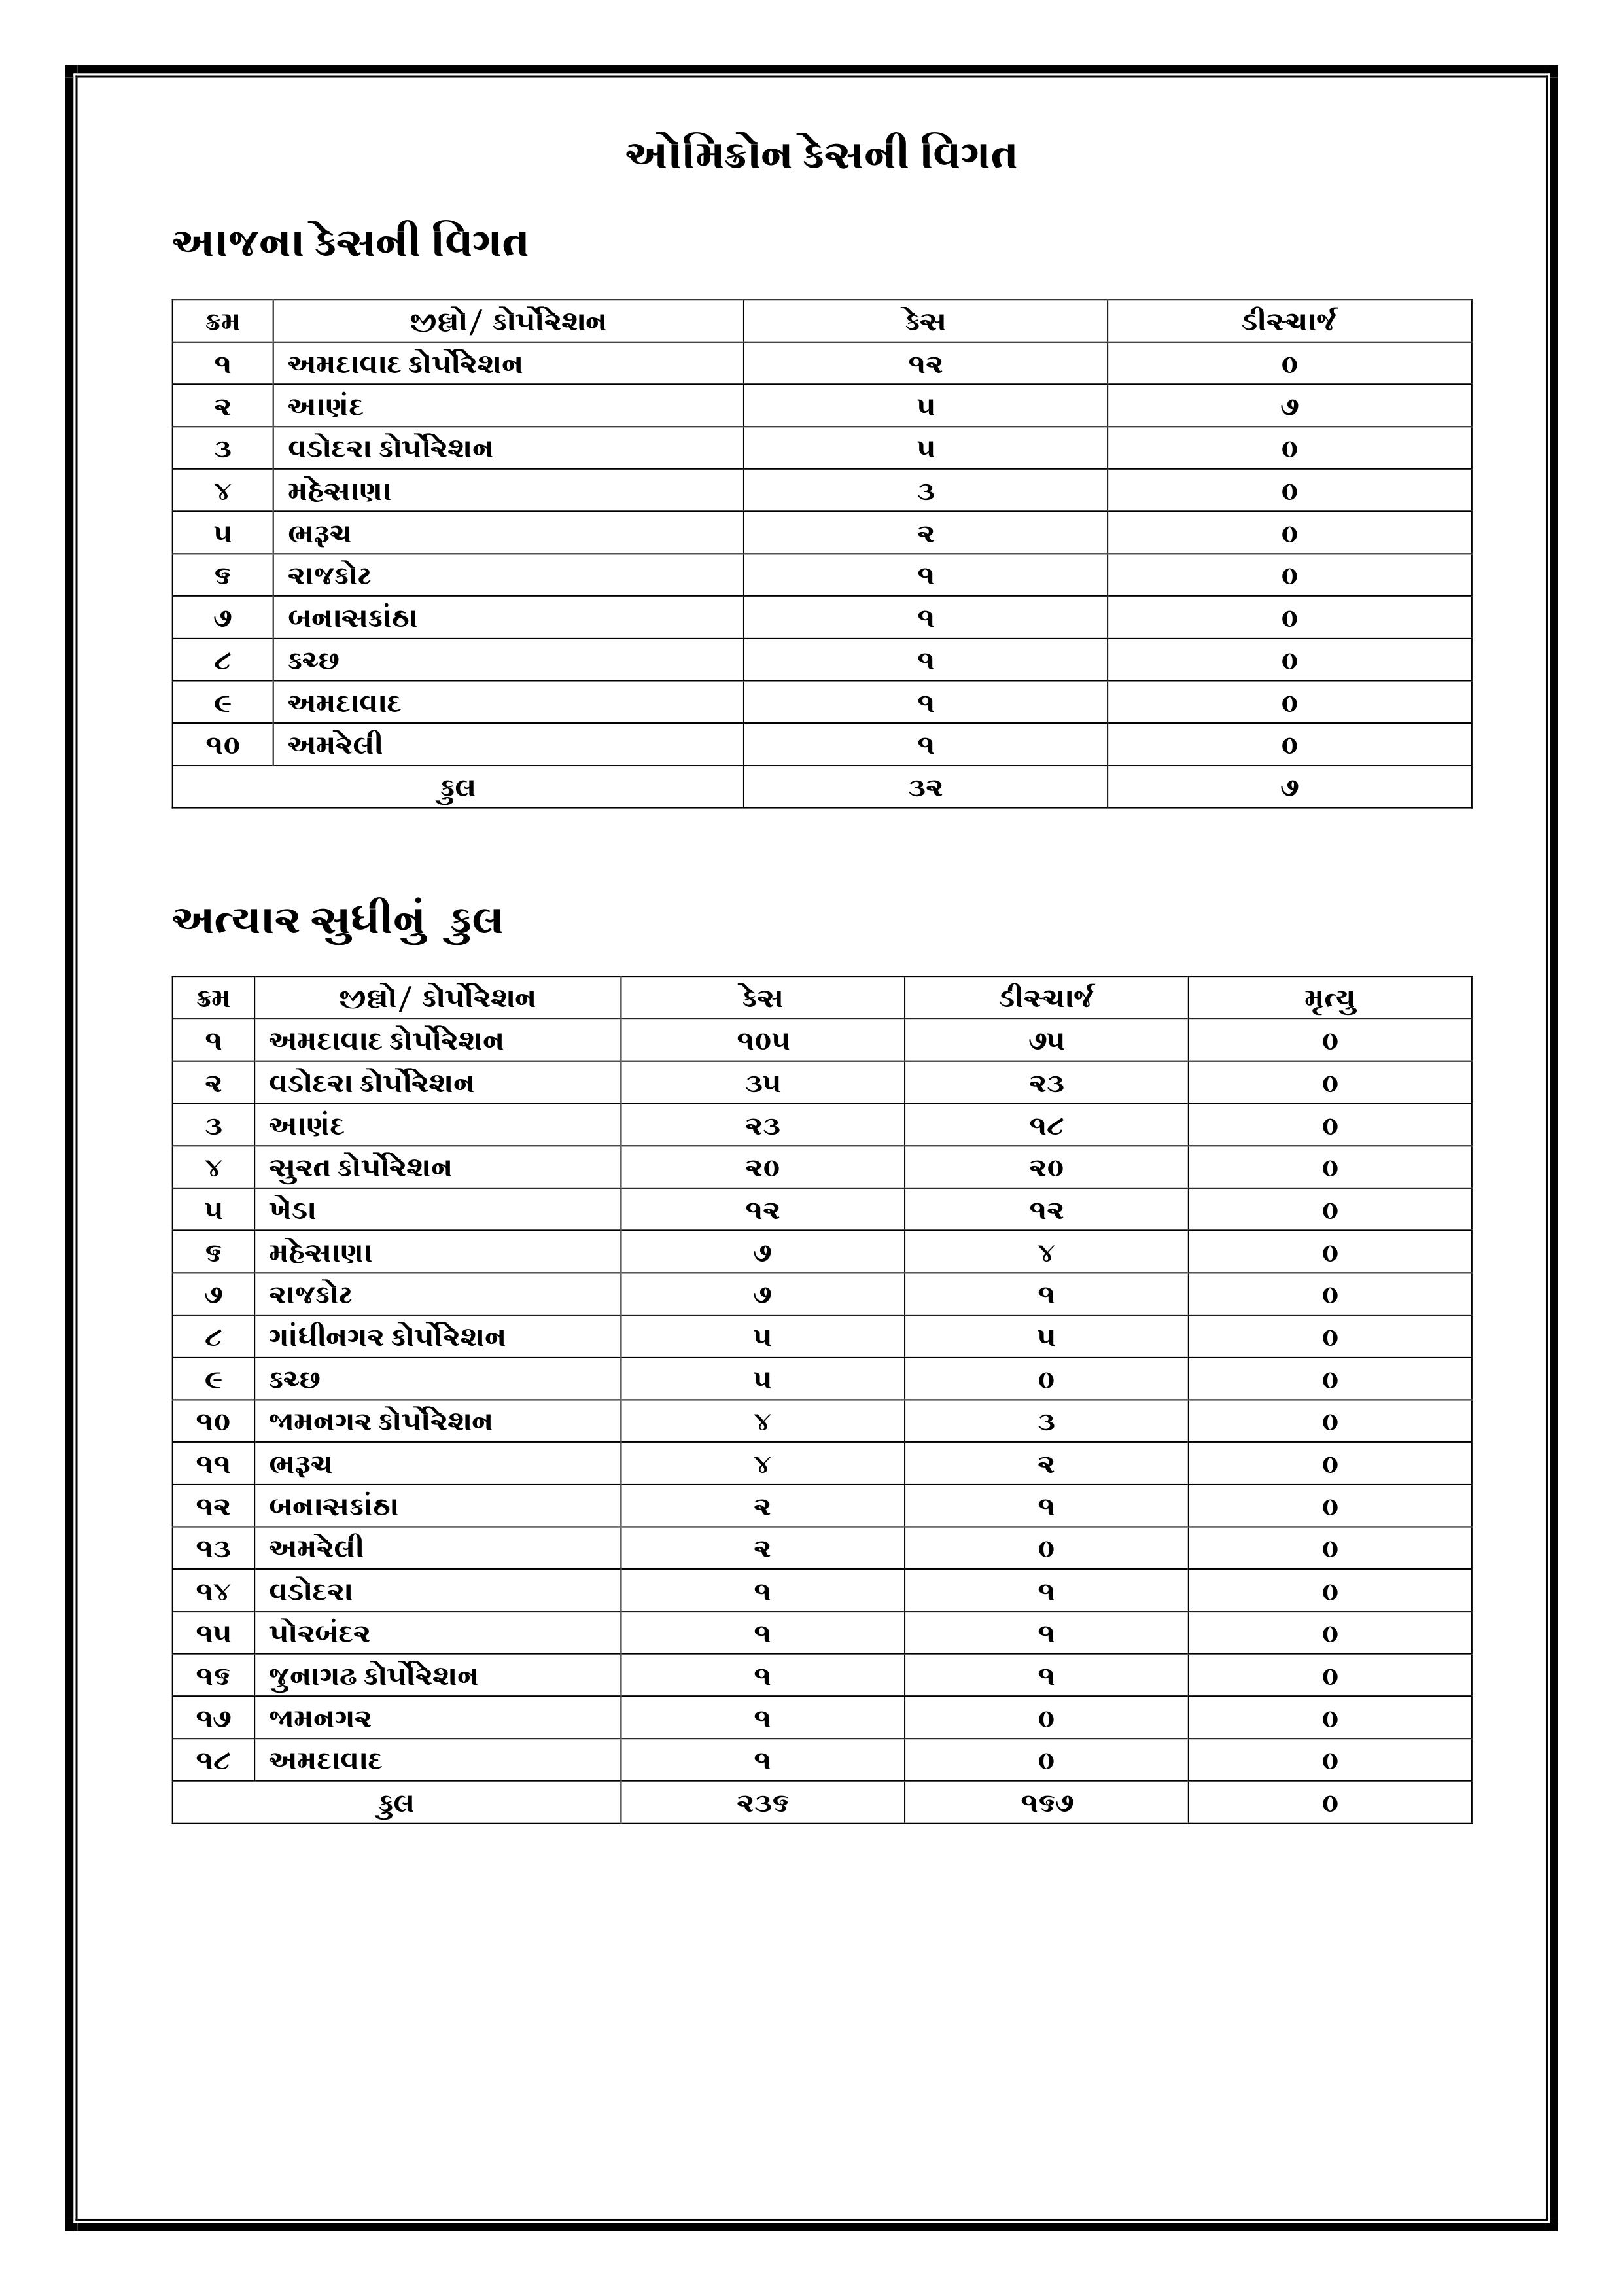 Gujarat Corona Update: આજે રાજ્યમાં 5677 કેસ નોંધાયા, જાણો તમારા વિસ્તારની પરિસ્થિતિ એક ક્લિકમાં